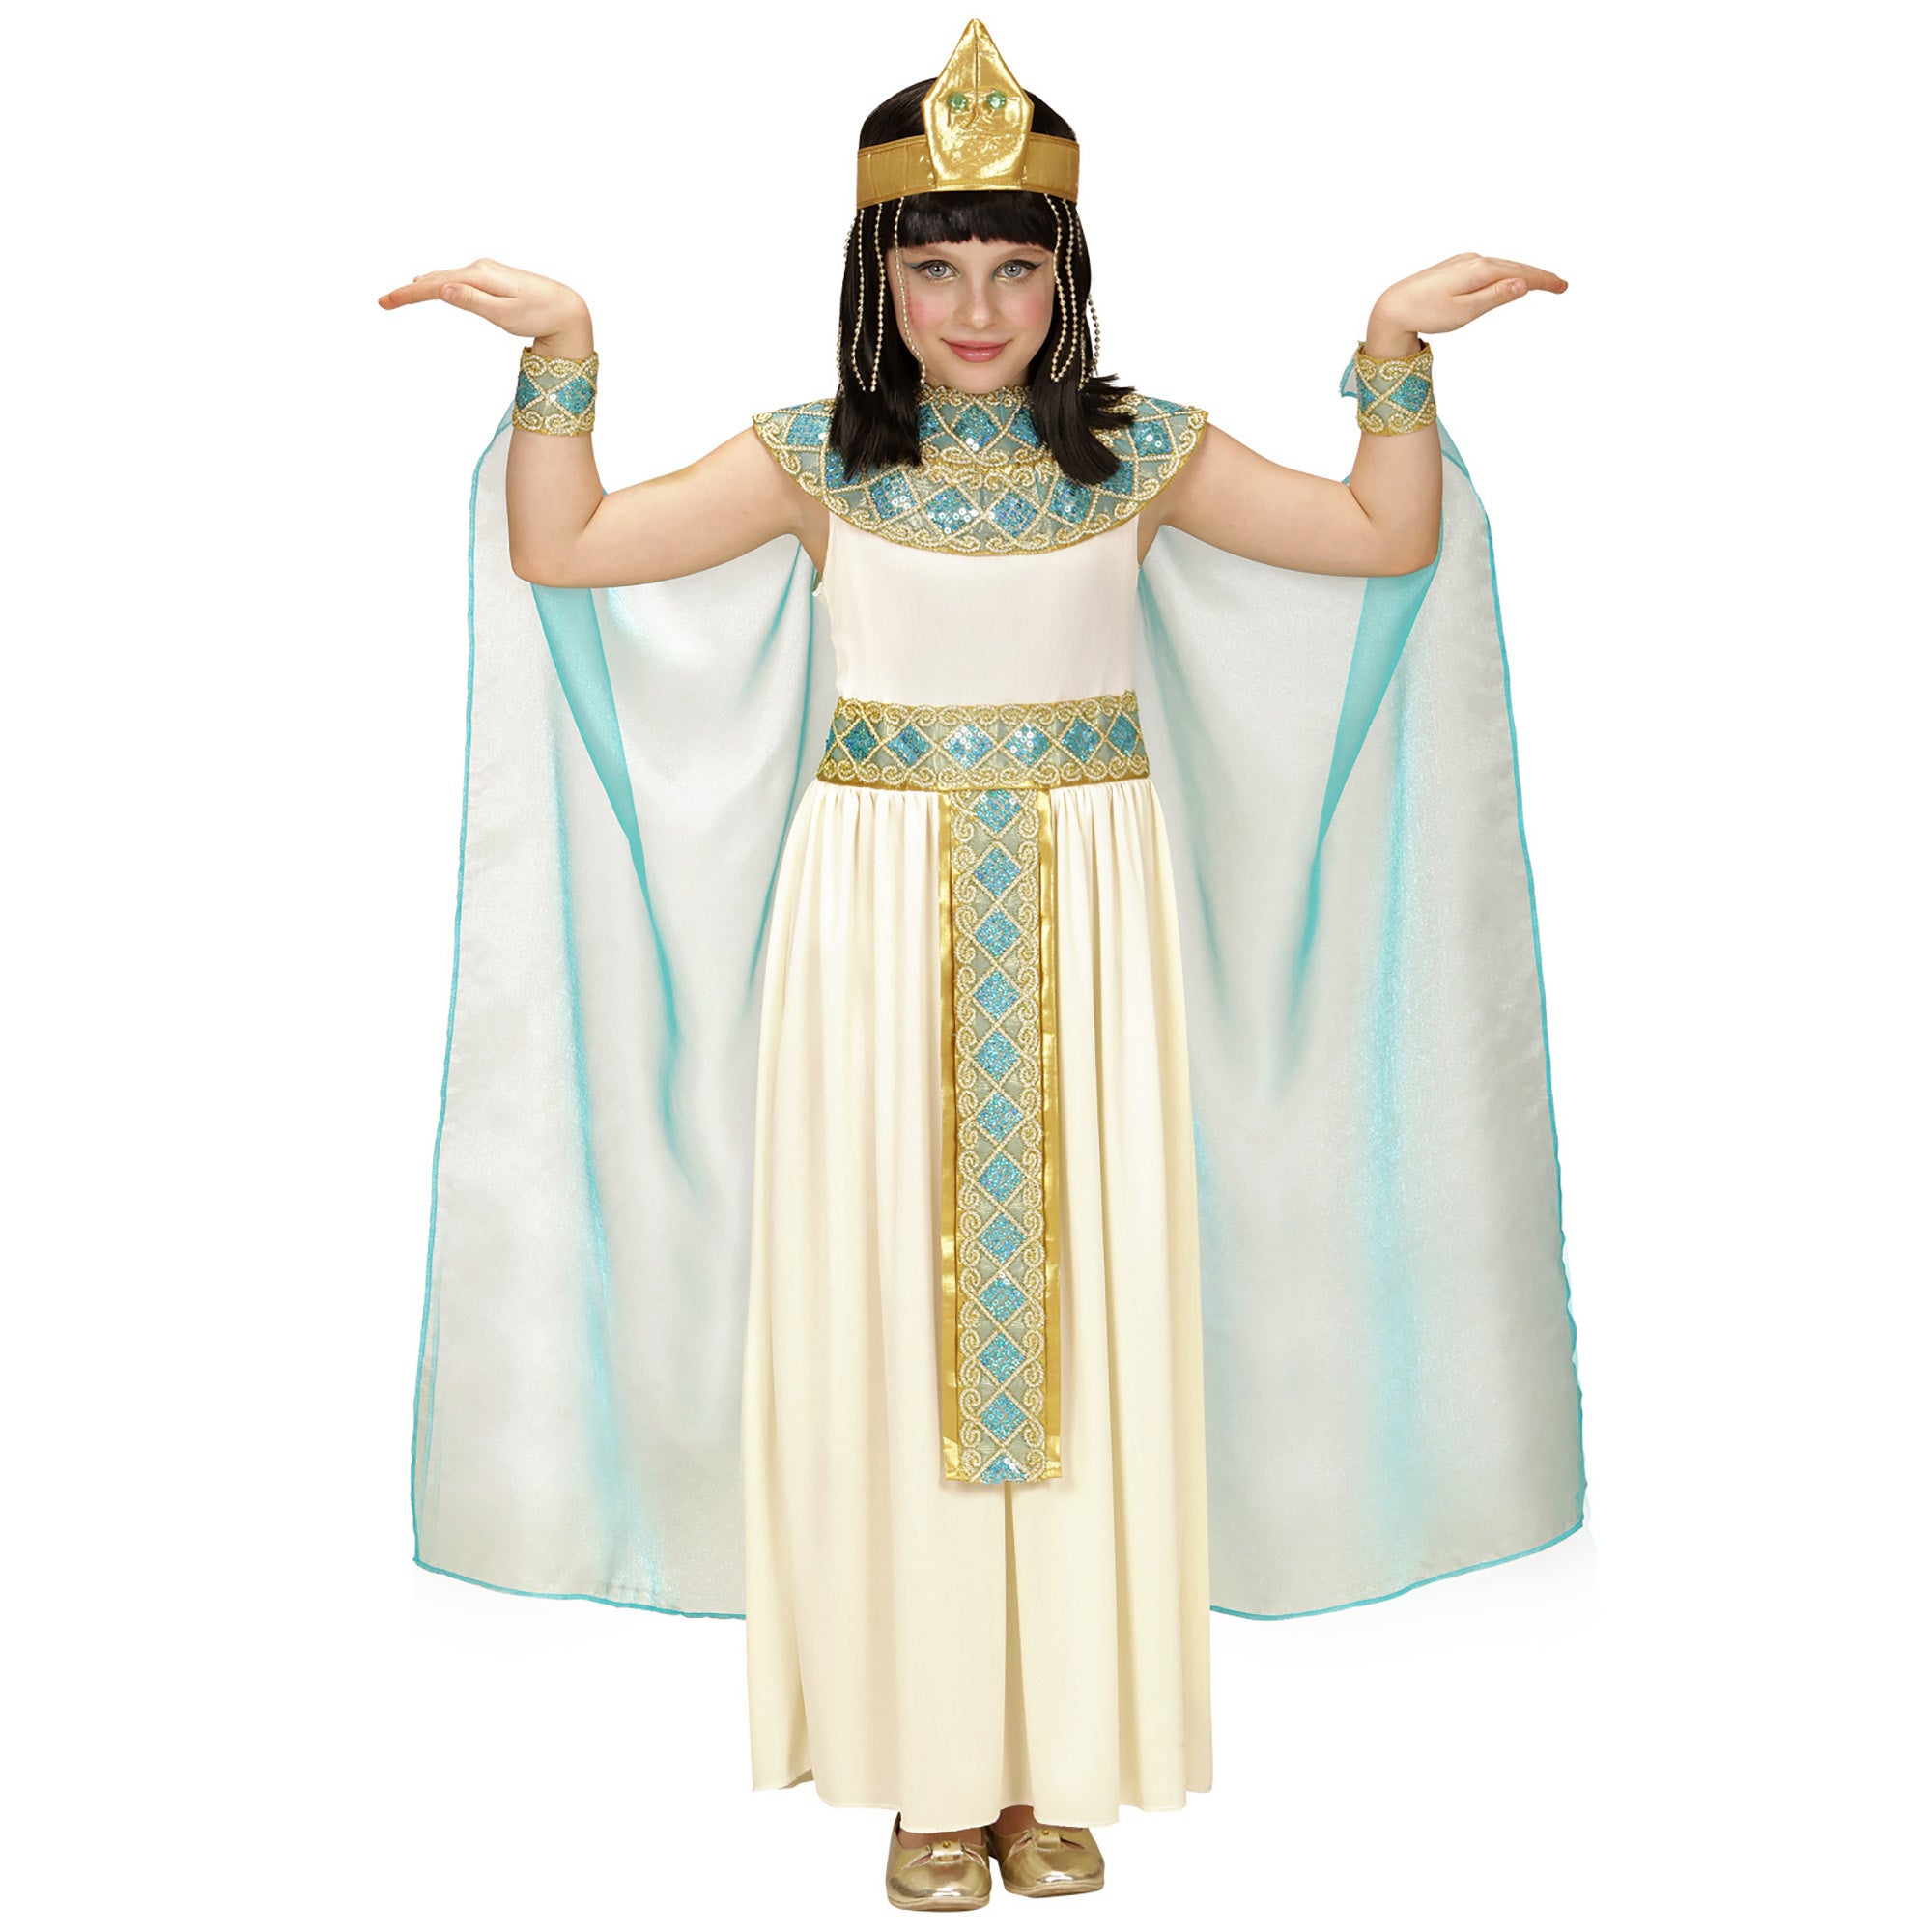 Cleopatra jurkjes voor kinderen voor carnaval